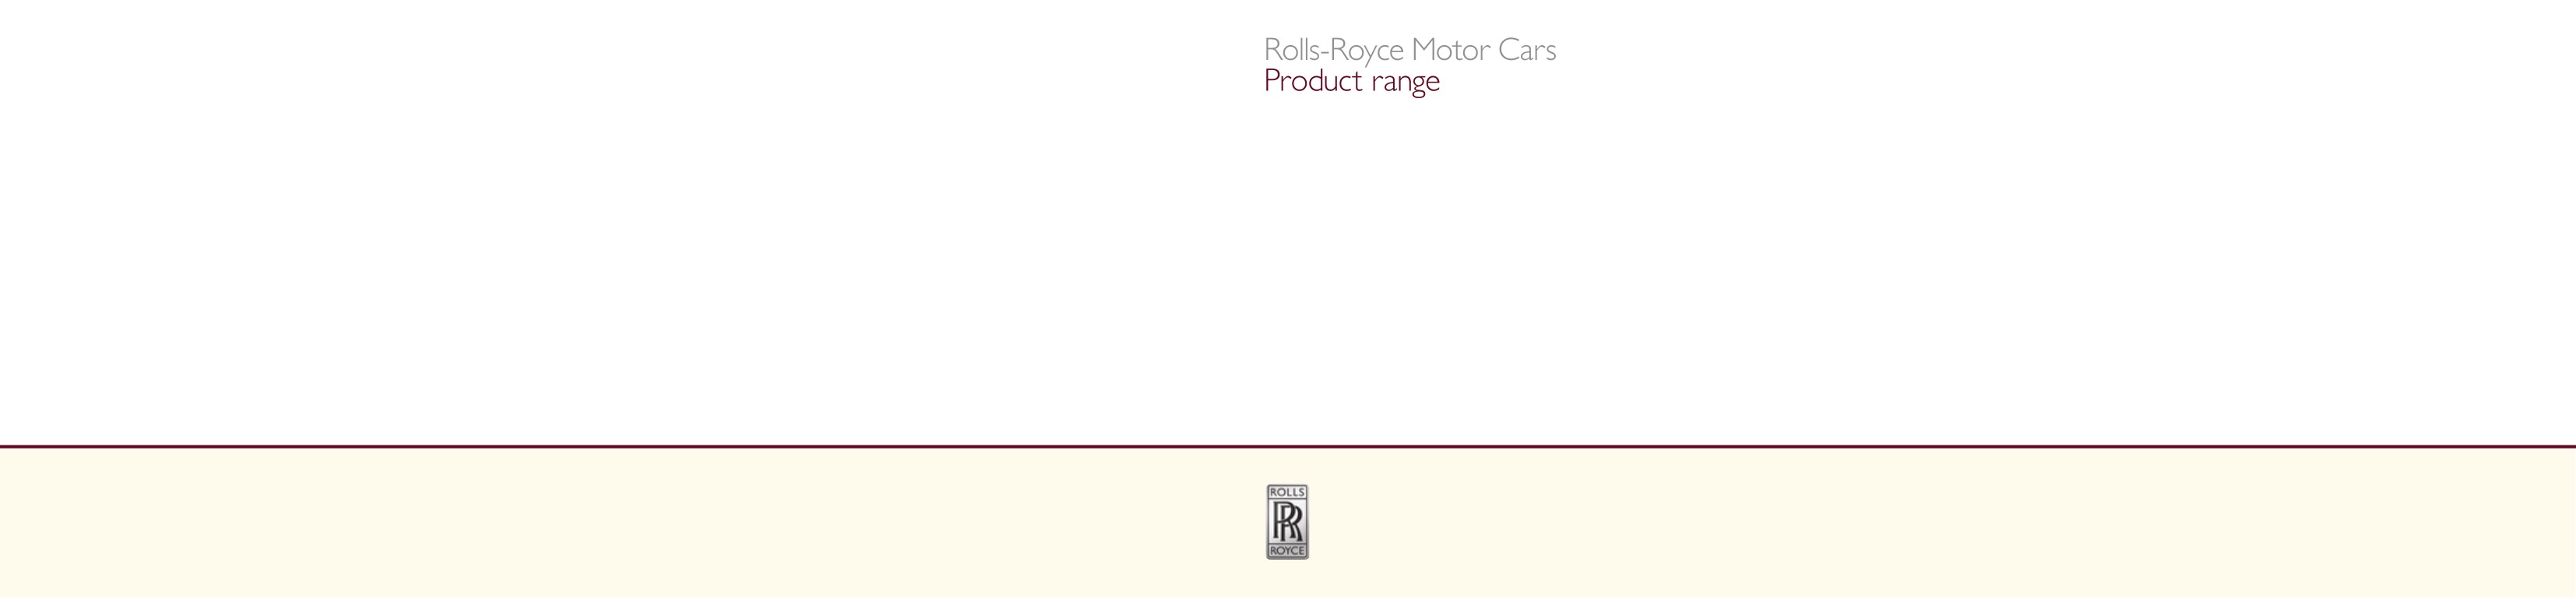 2013 Rolls-Royce Model Range Brochure Page 3